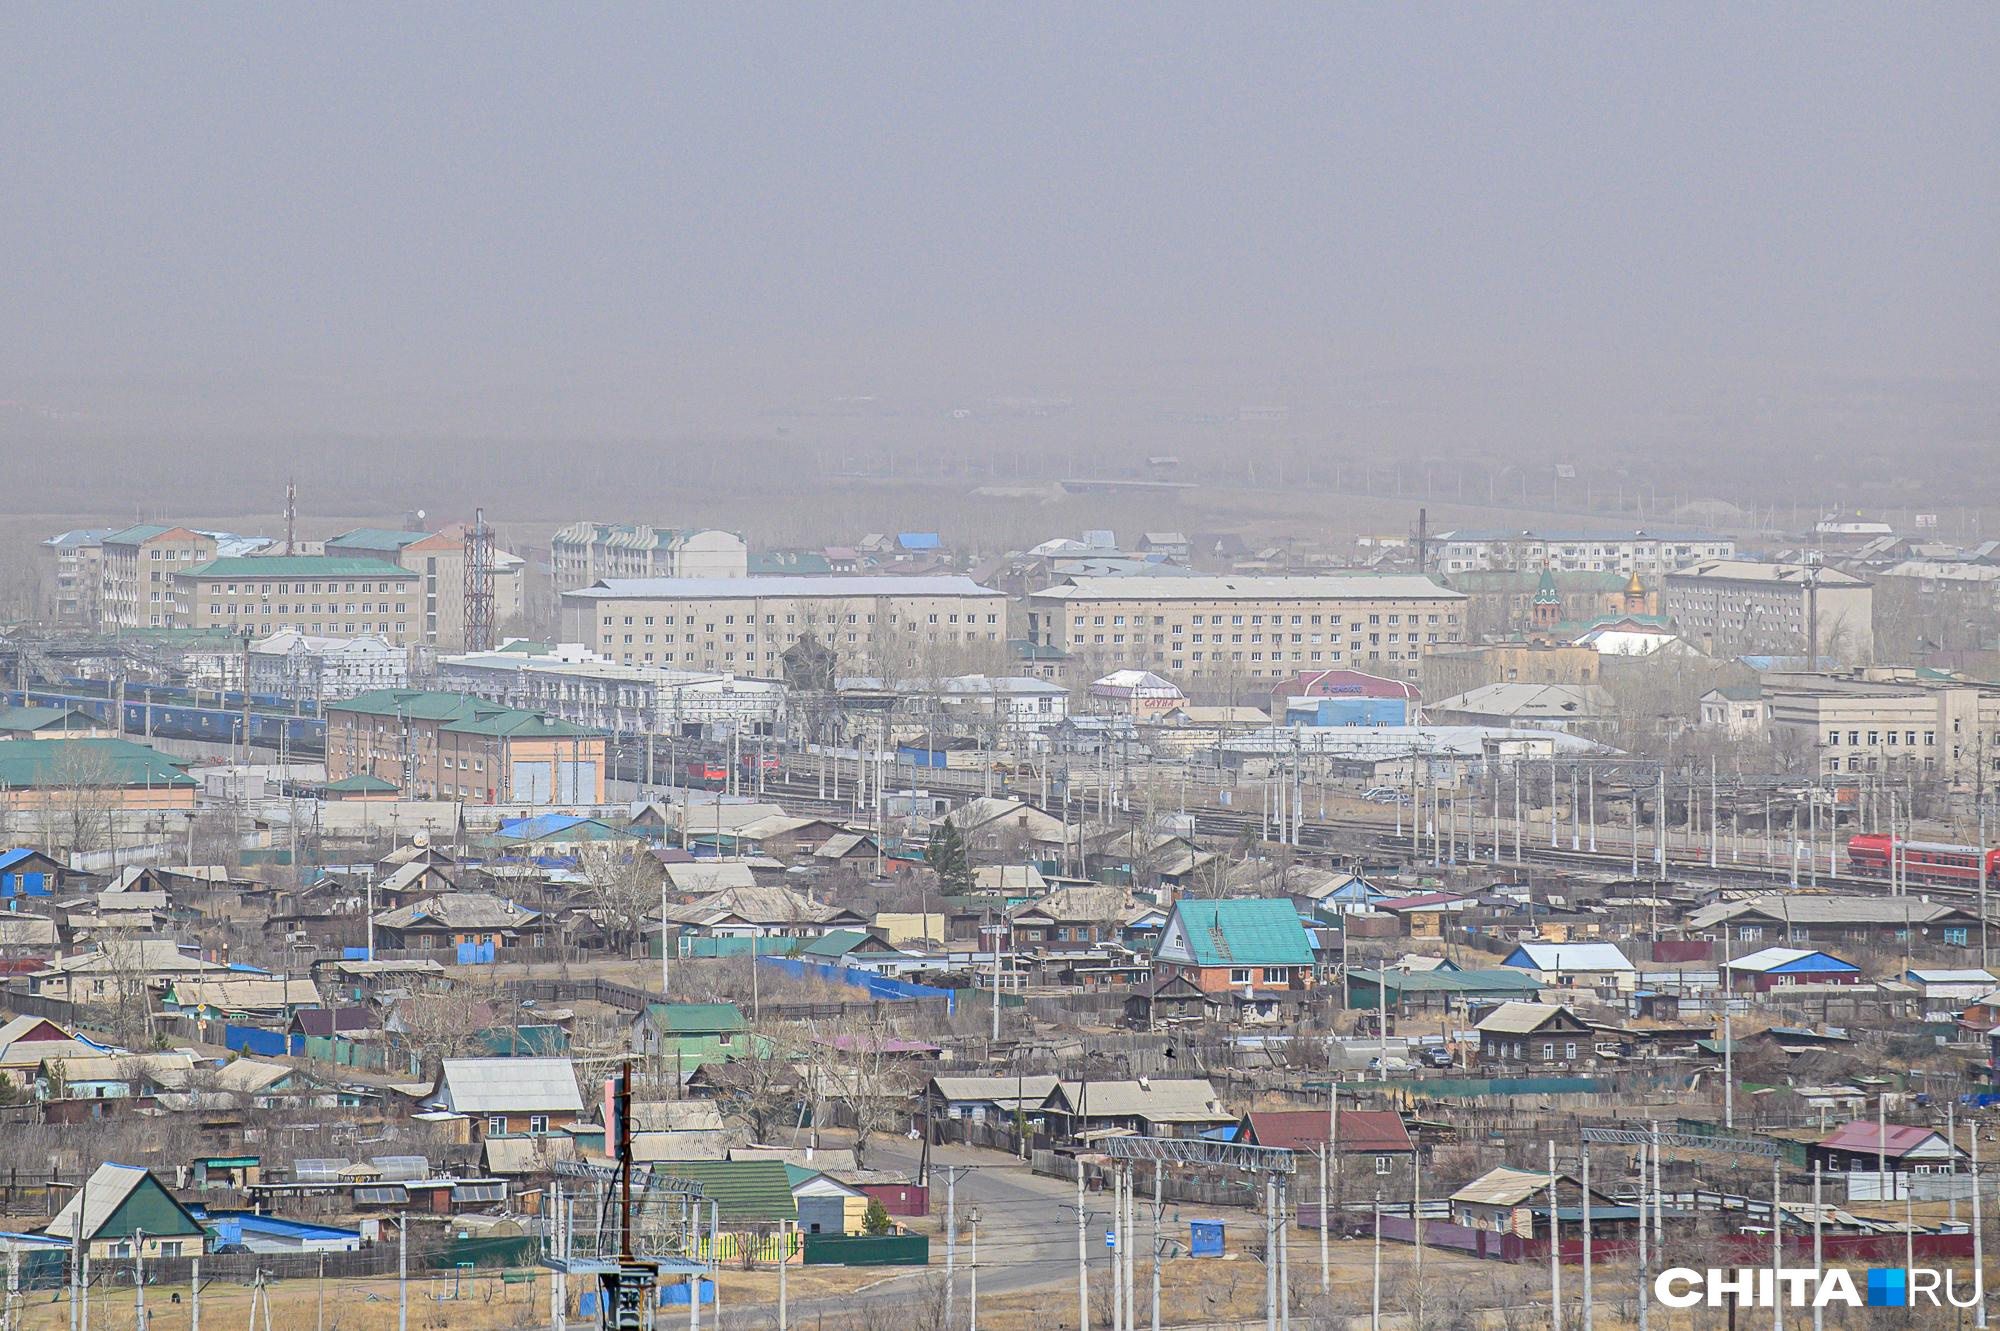 Город Борзя в Забайкалье может замерзнуть зимой без федеральной поддержки